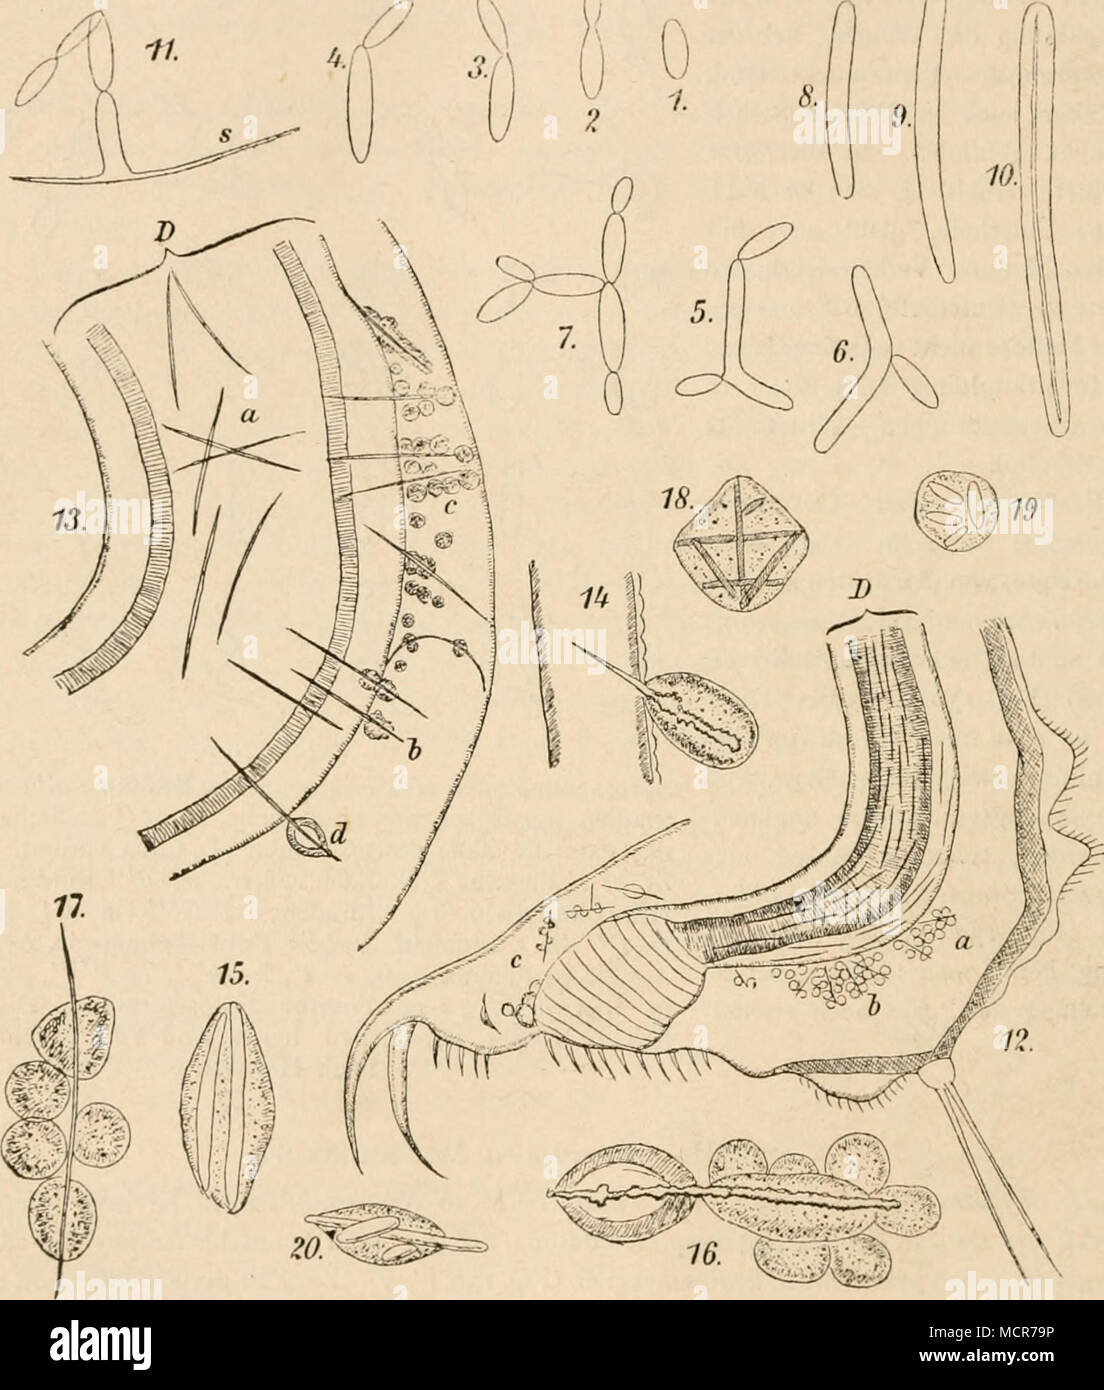 . (B. 746.) Fig- 138. Monospora cnspidata Mktschnikokk. 1—7. Vegetative Zust.ände, in Sprossung begriffen. 8 bis 9. Junge Asci, 10. Reifer Ascus mit seiner nadeiförmigen Spore. II. Spore, seitlich sprossend. 12 Stück vom Hinterleibc eines kleinen Krebses (Daphnia), von dem Pilze befallen; bei abc in der Leibeshöhle befindliche Sporen, von Blutkörperchen umgeben ; viele Sporen finden sich auch in der Darm wand D und im Darmlumen. 13. Stück aus dem Vordertheile eines Daphnia- Körpers. D Darmwand, bei bc und a von den nadeiförmigen Schlauchsporen durchbohrt, um welche sich zahlreiche Blutkörperch Stock Photo